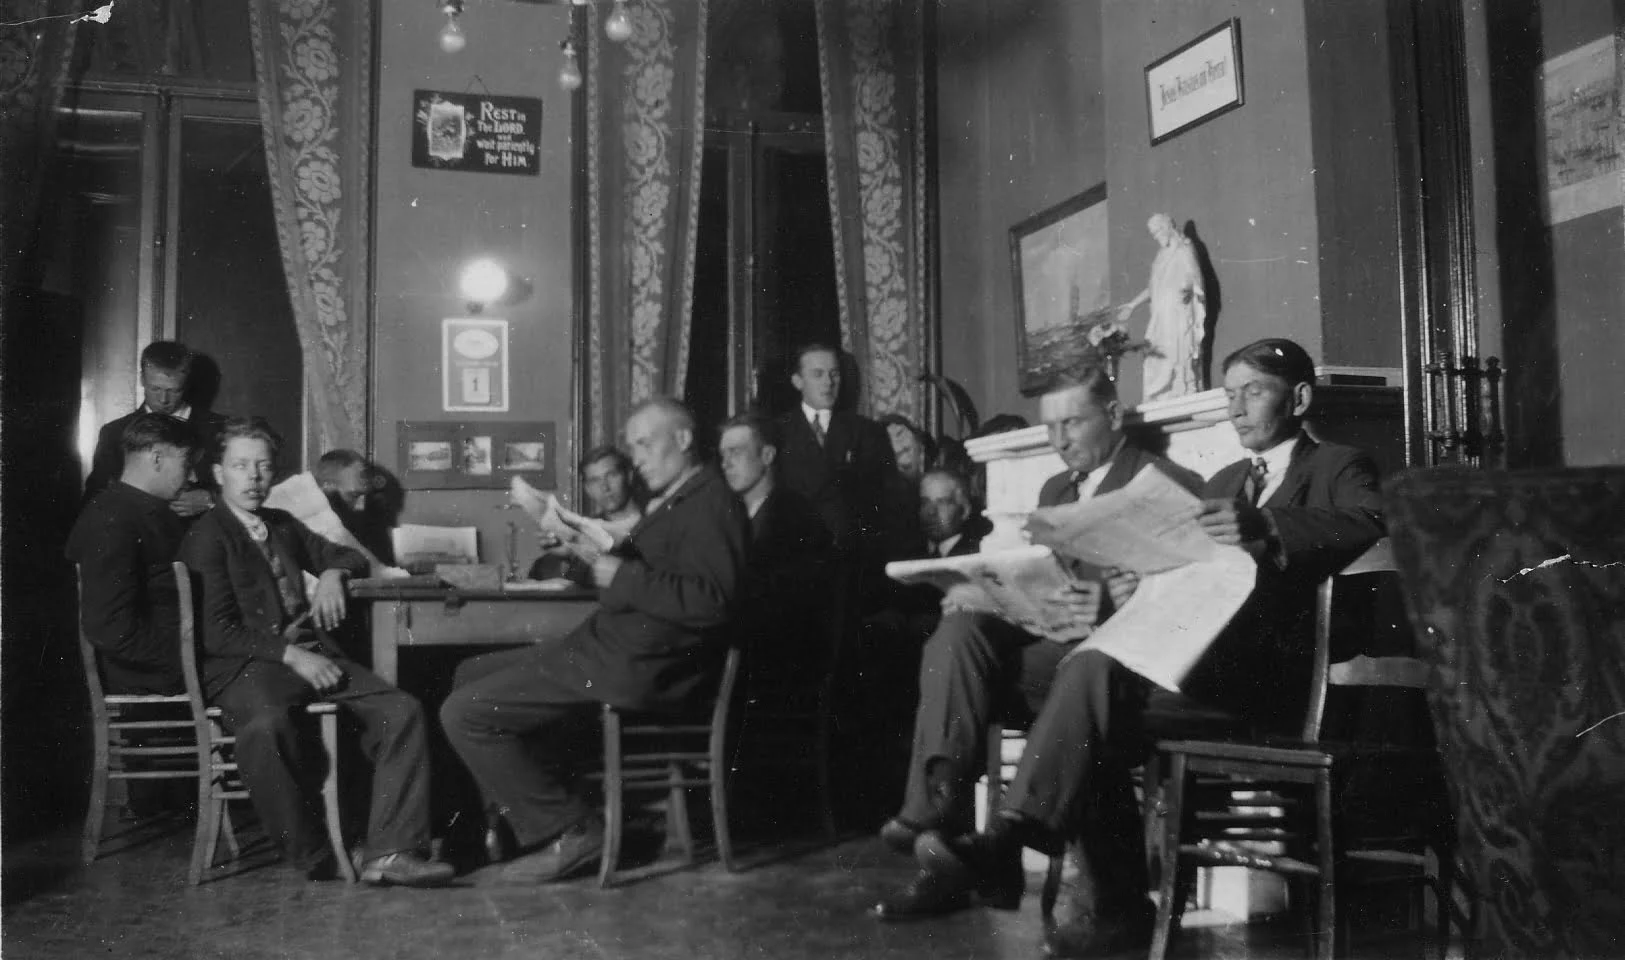 "Siististi pukeutuneita miehiä istuu ja lukee sanomalehtiä. Mustavalkokuva."